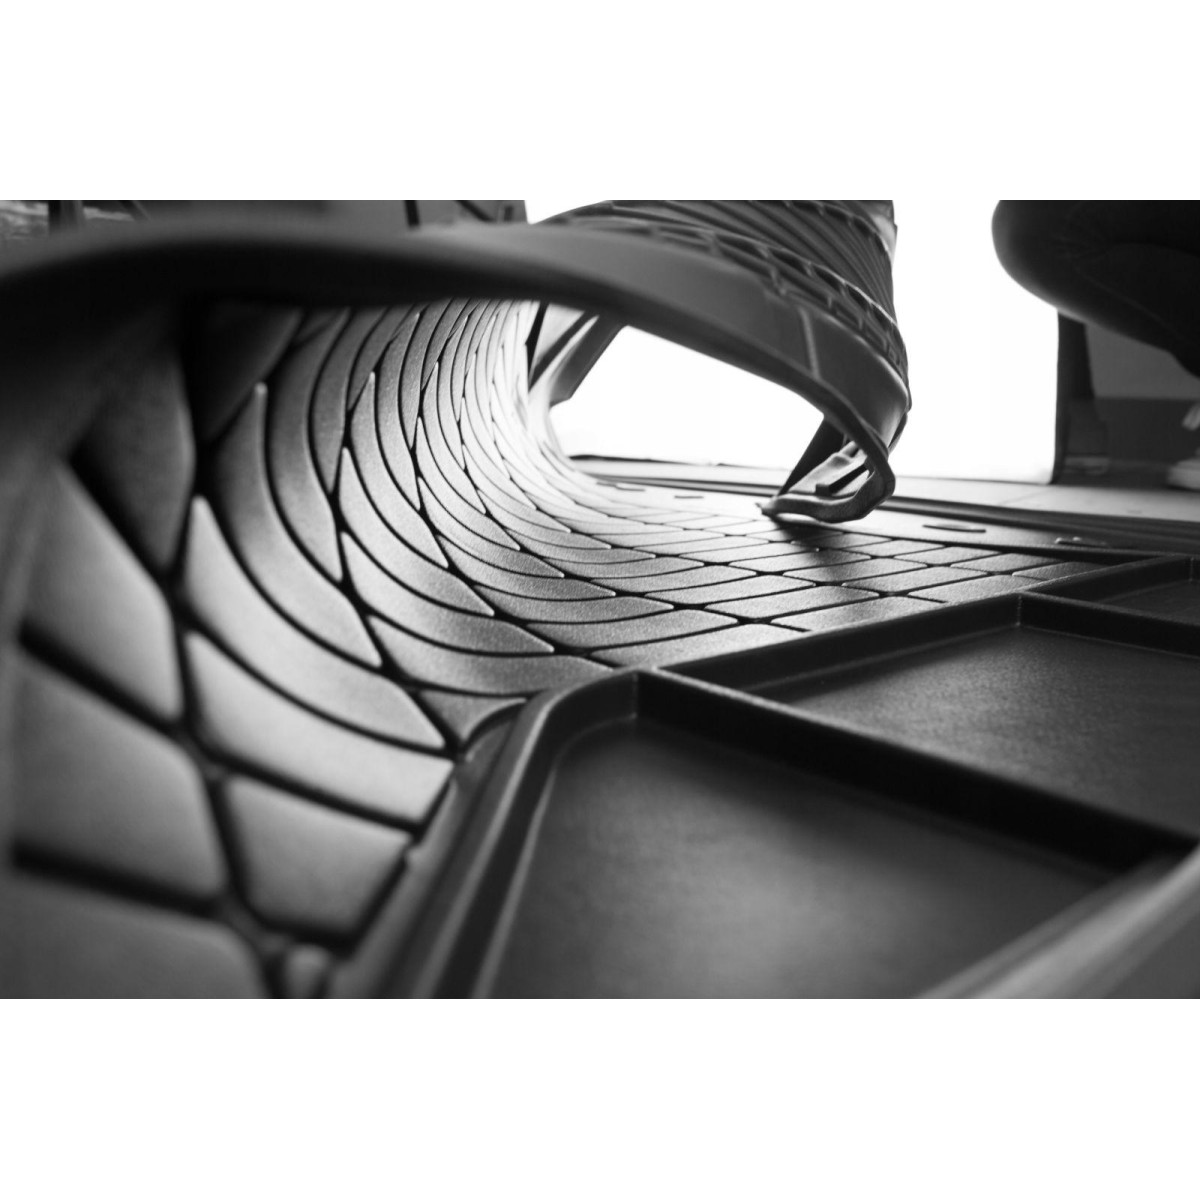 Guminis bagažinės kilimėlis Proline BMW 3 (F34) Gran Turismo nuo 2013m. / paaukštintais kraštais